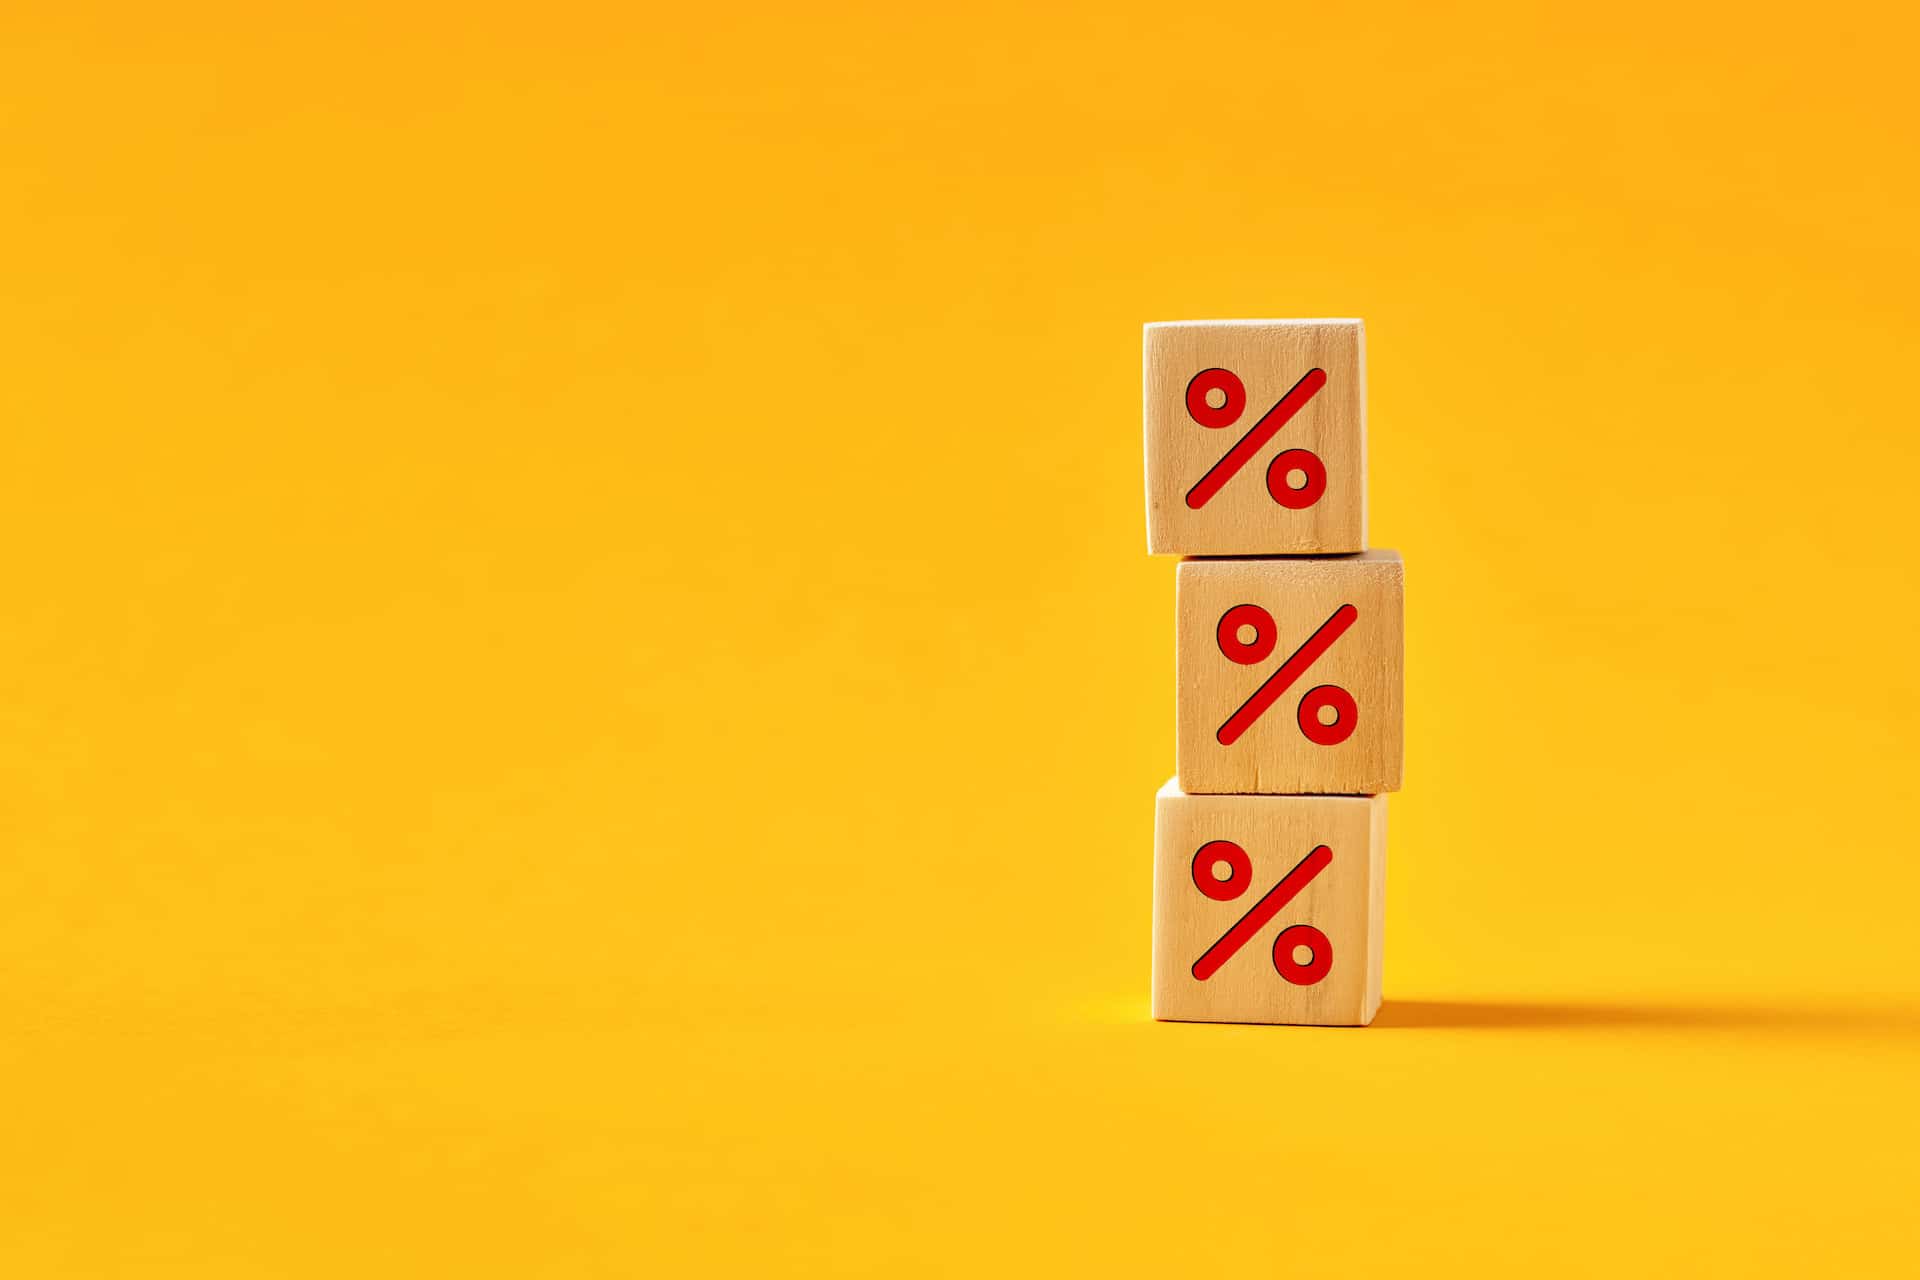 trois cubes en bois sur fond jaune avec le symbole % imprimé en rouge